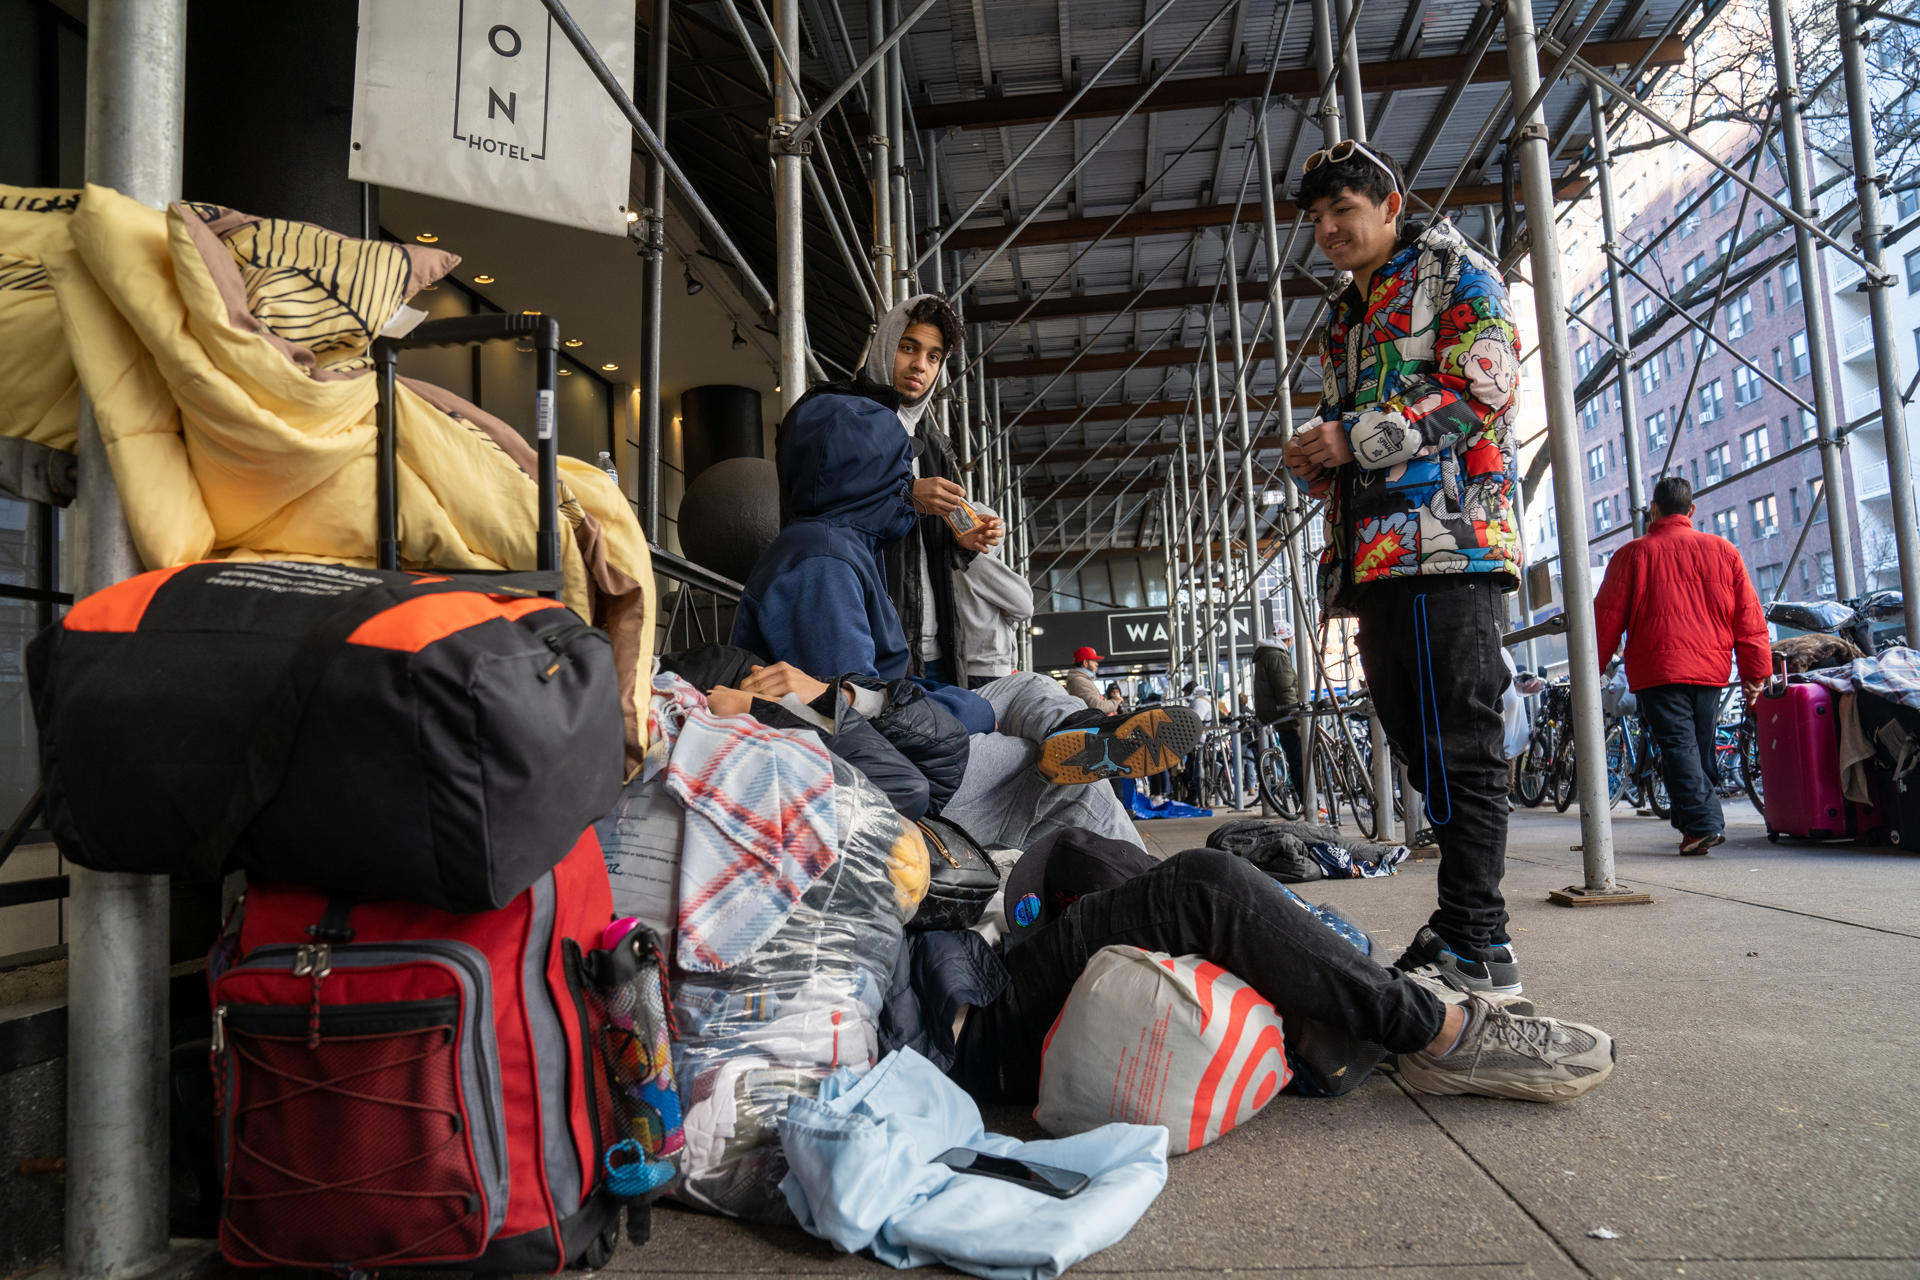 Inmigrantes venezolanos desalojados del hotel Watson acampan en la calle afuera del edificio como protesta hoy, en Nueva York (EEUU). EFE/Ángel Colmenares
